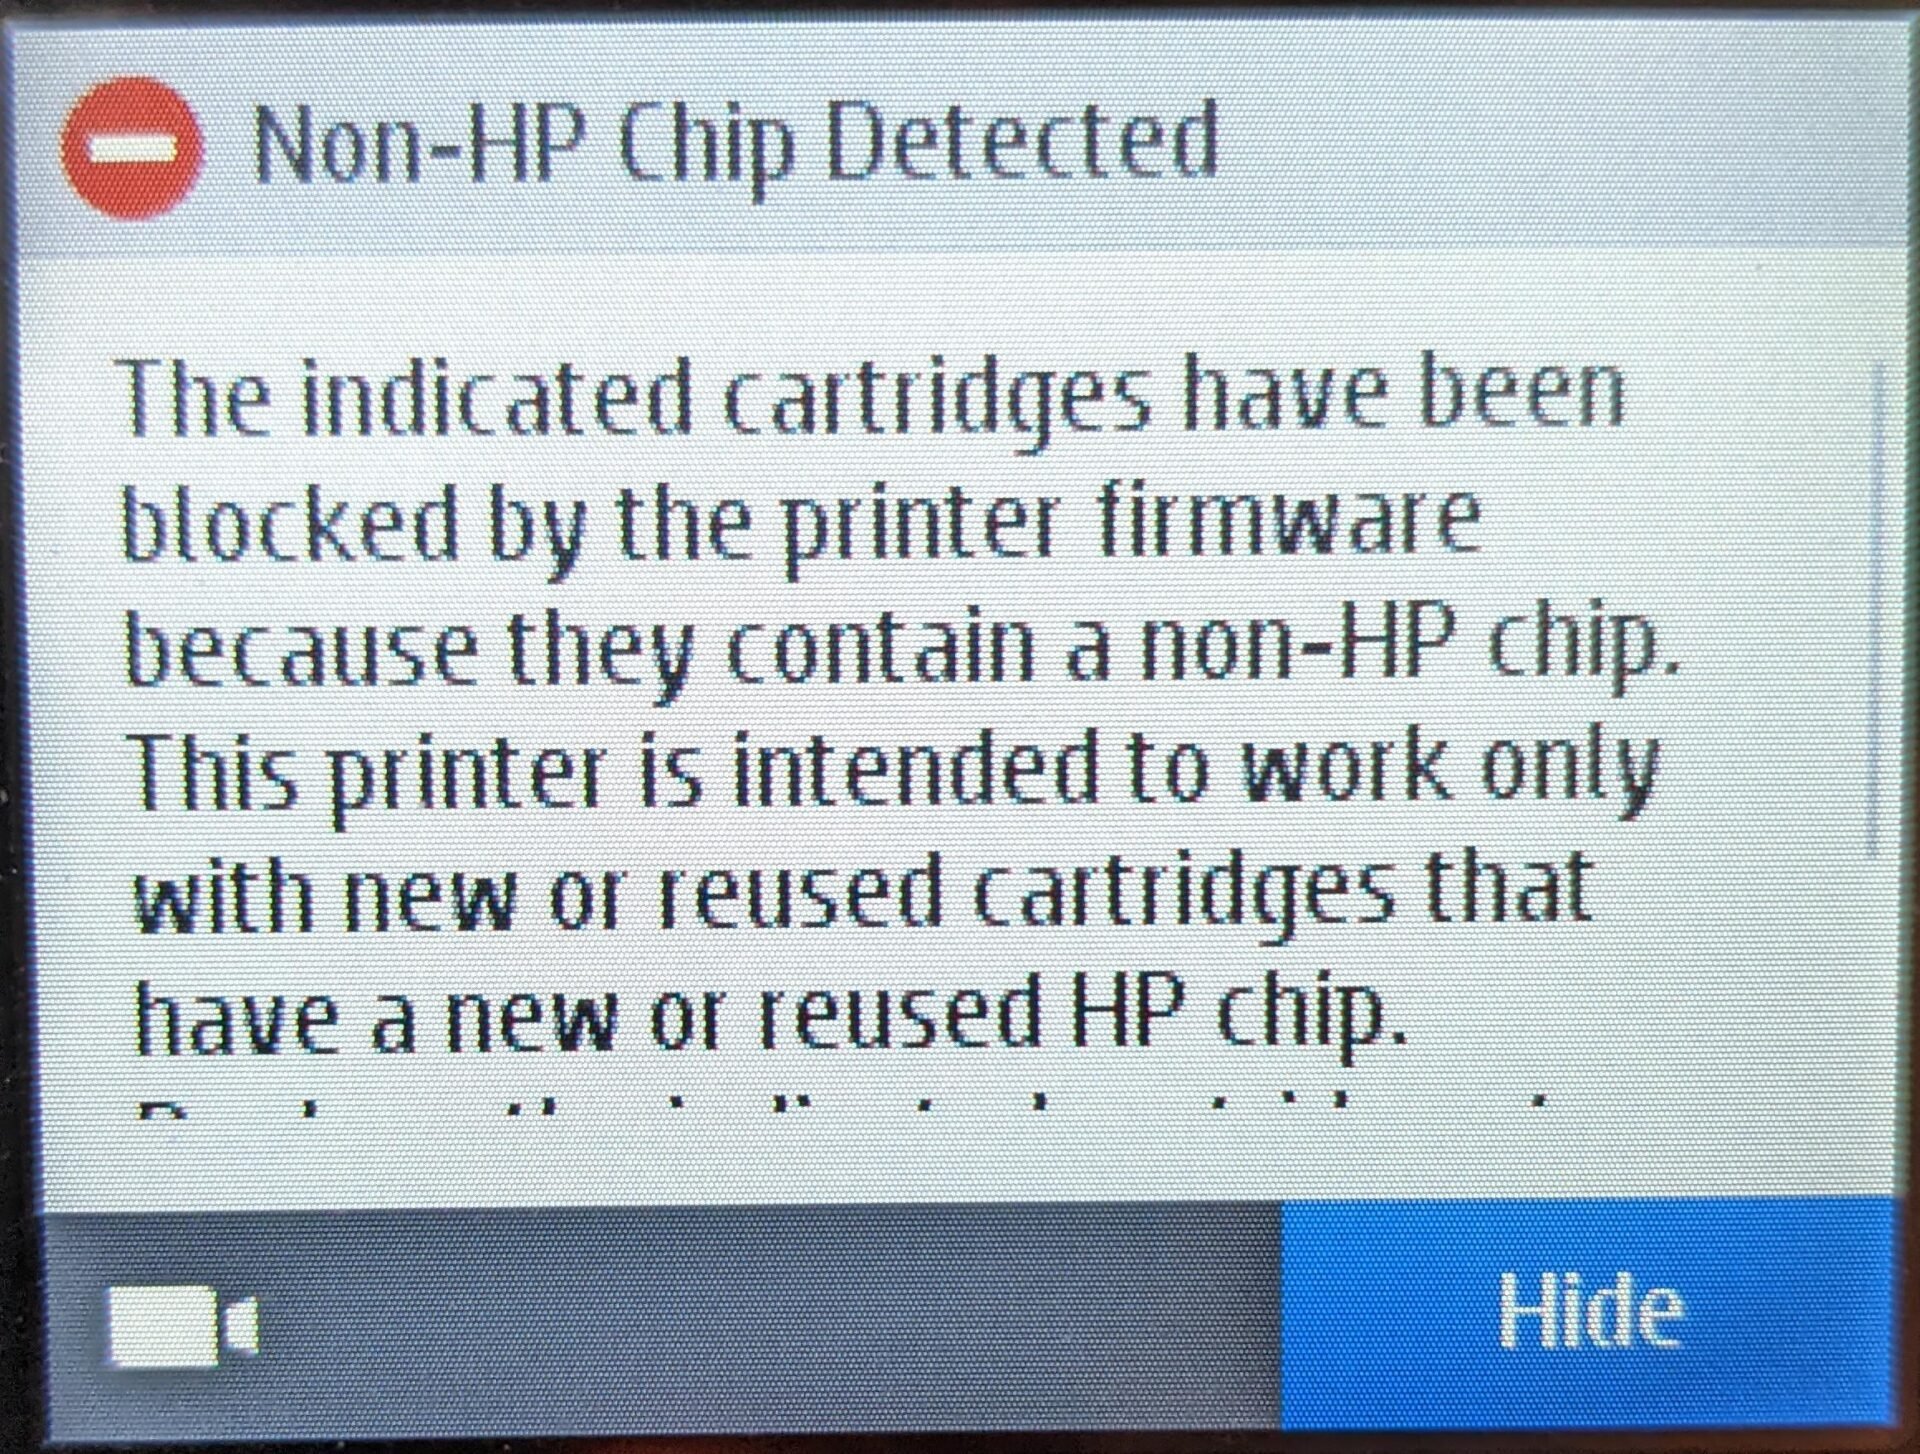 HP bloque maintenant votre imprimante si vous achetez des cartouches d'encre  moins cher